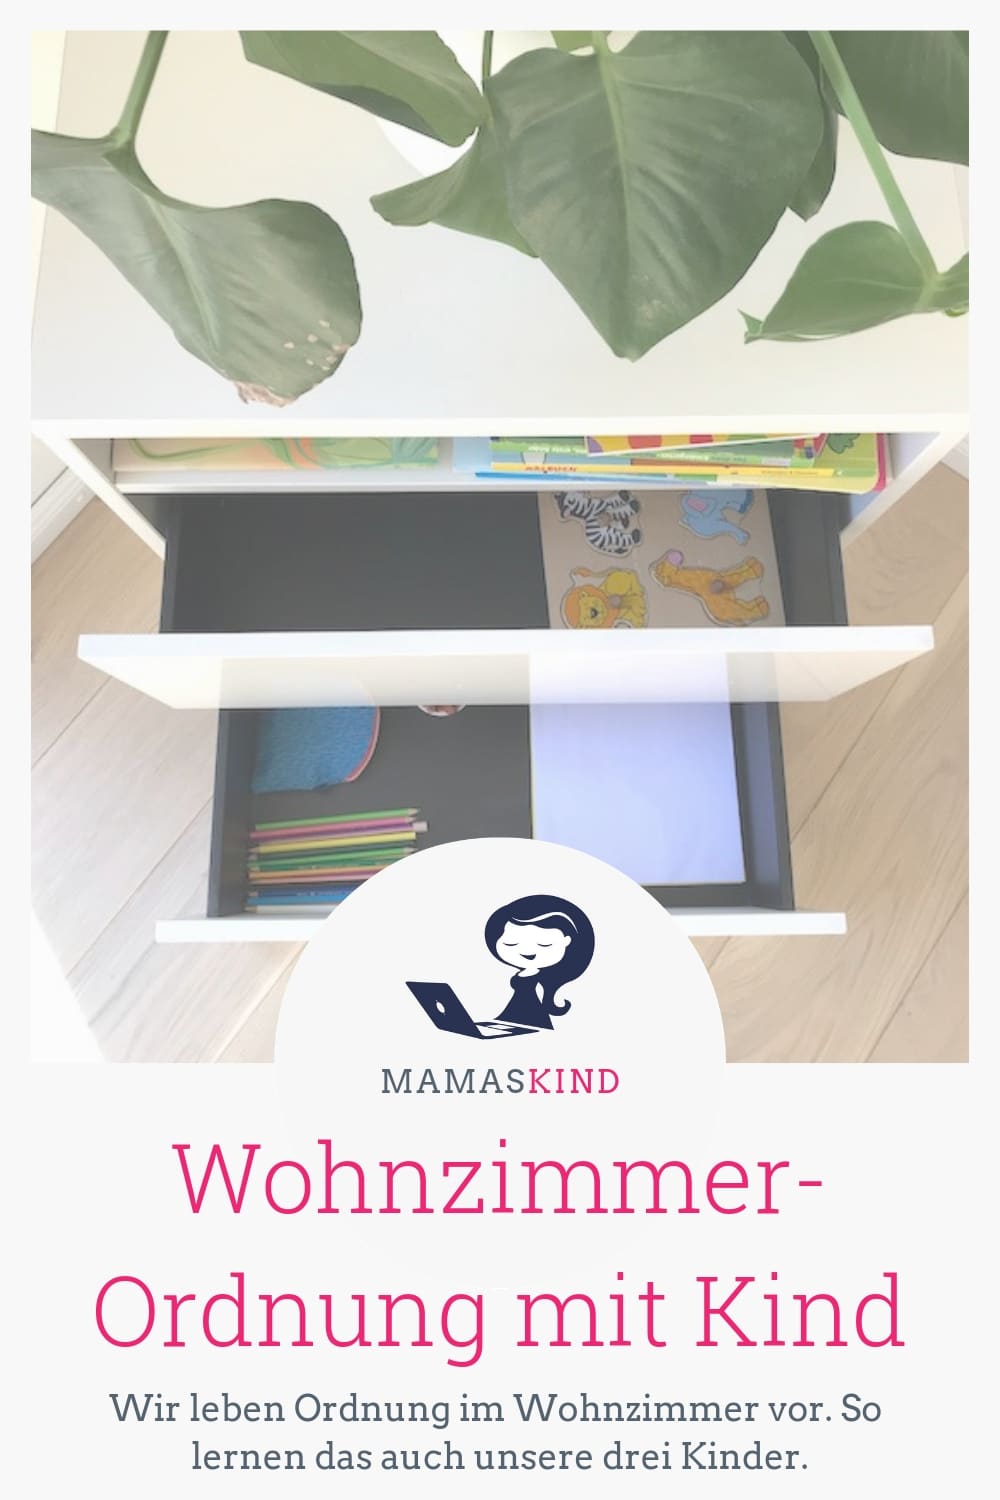 Wohnzimmer-Ordnung mit Kind - ganz einfach, wenn man es vorlebt. | Mehr Infos auf Mamaskind.de